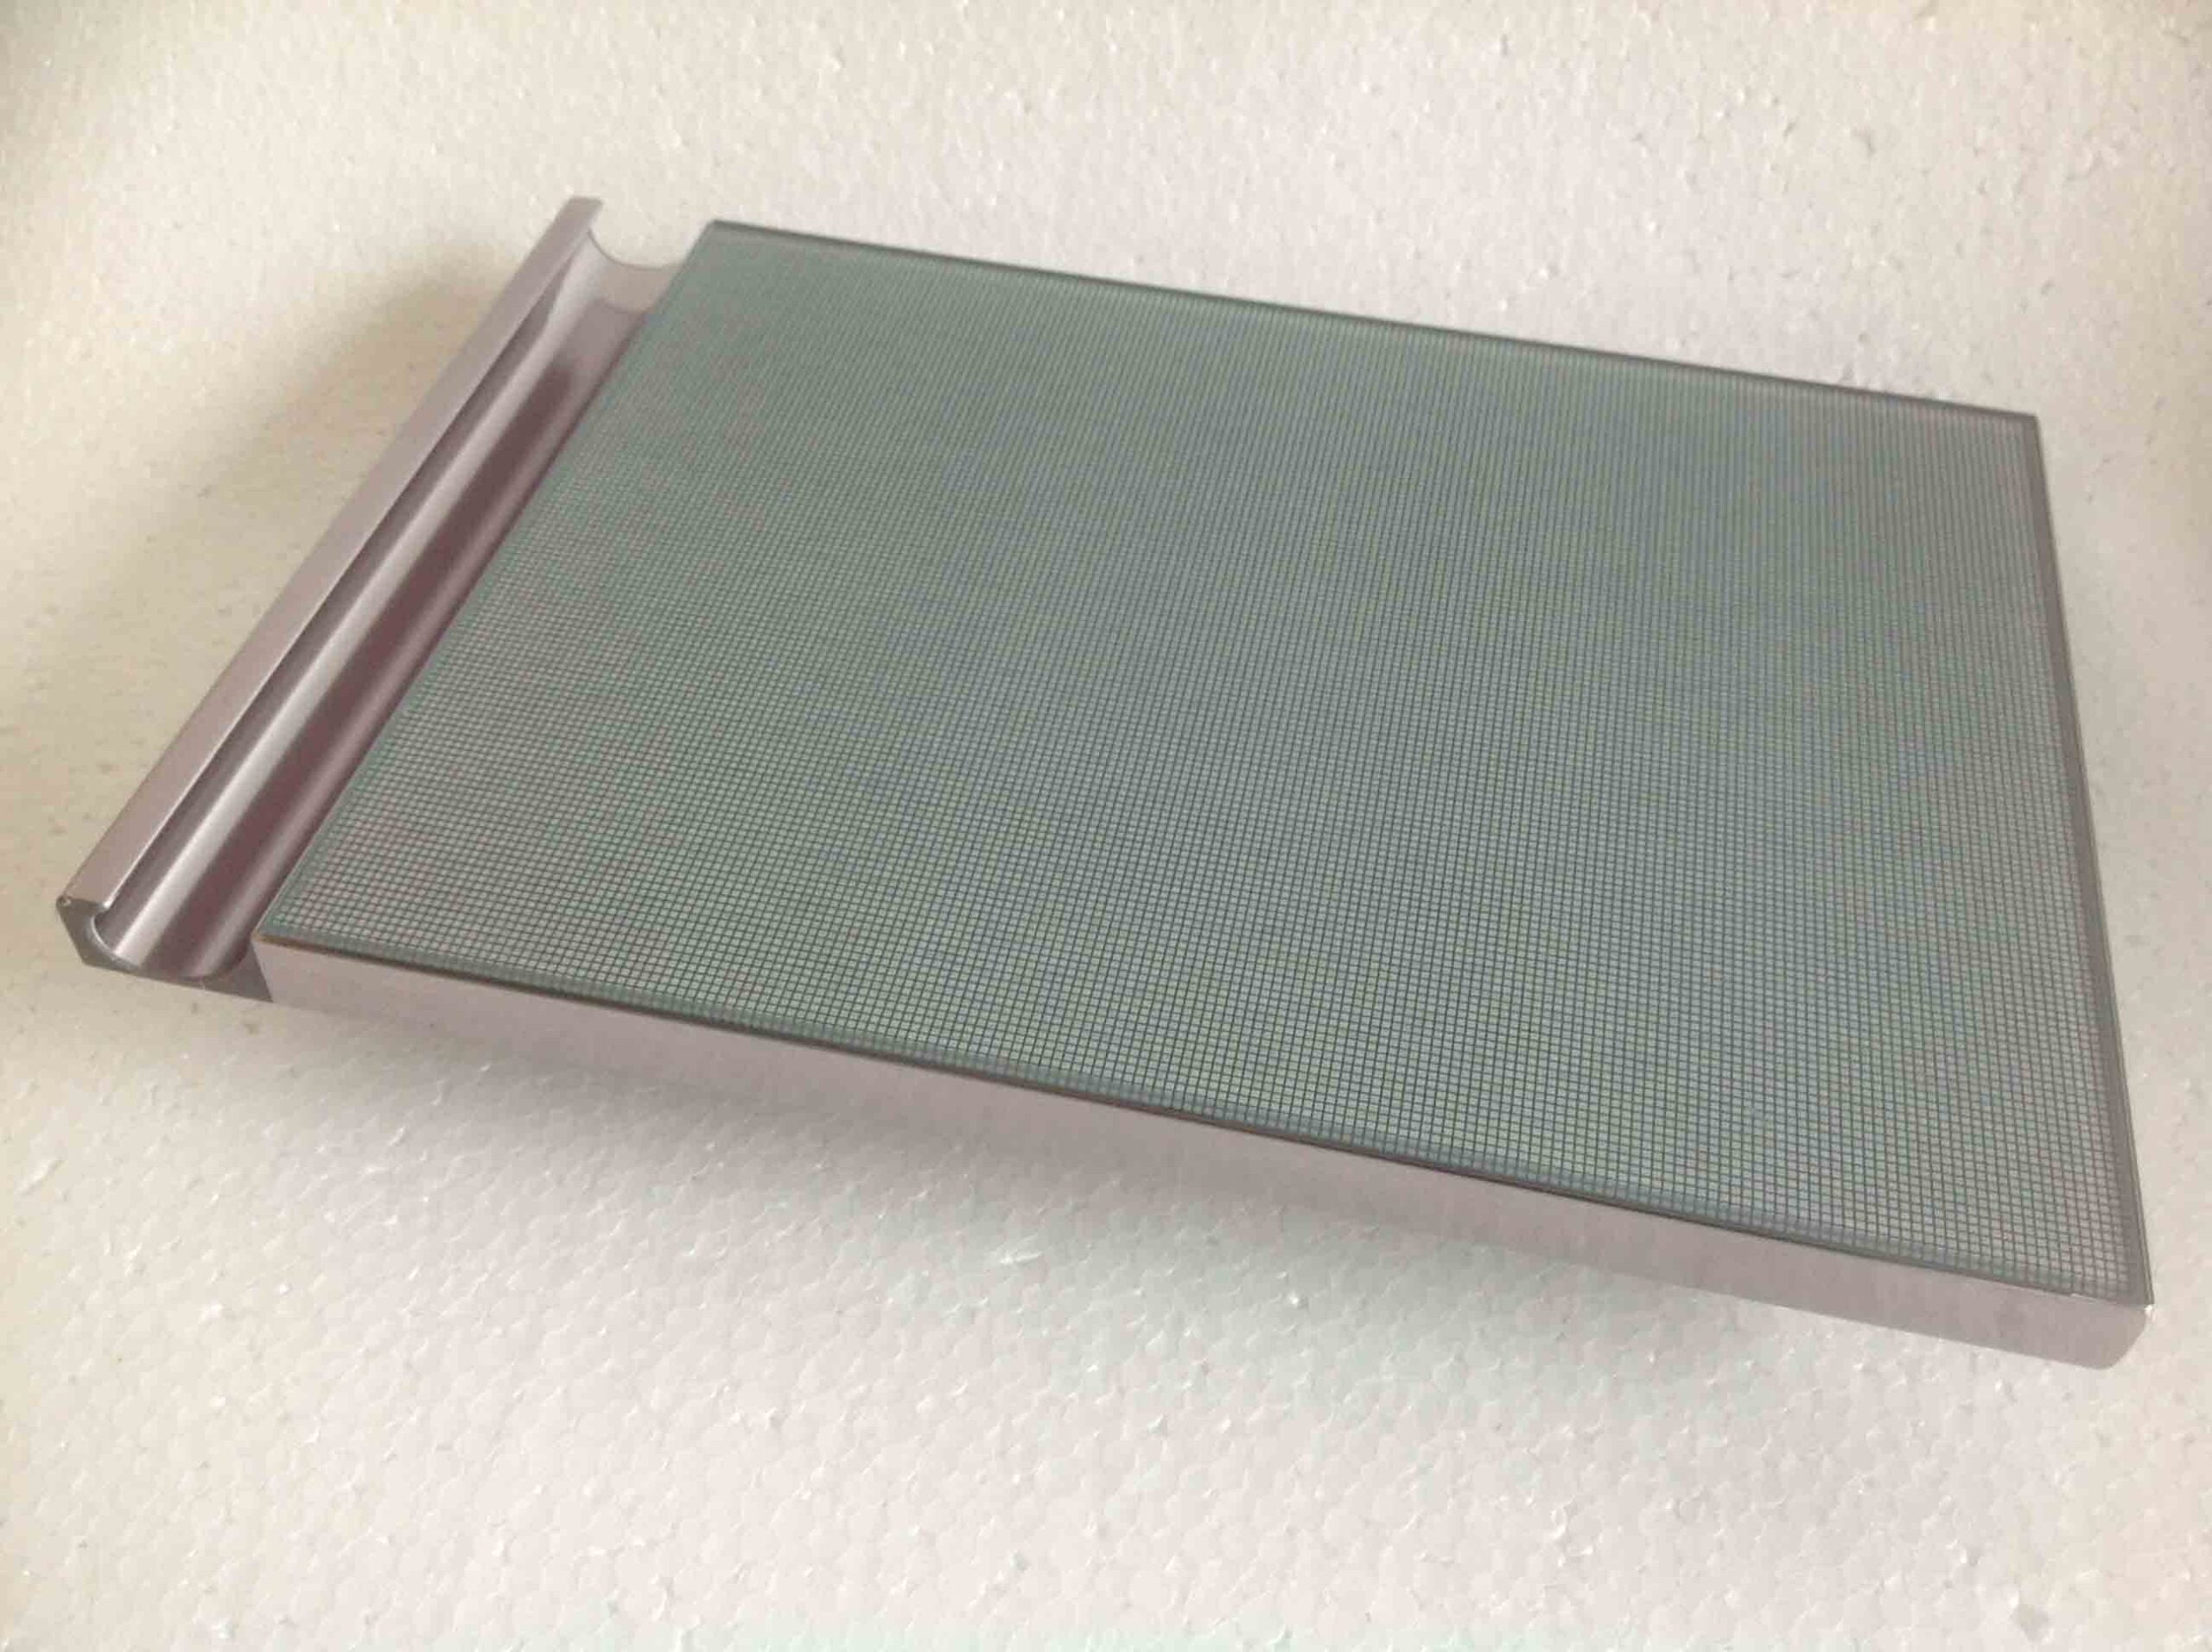 最も完璧な 普通鋼・特殊鋼 S50C 切板 普通鋼・特殊鋼 切板 板厚